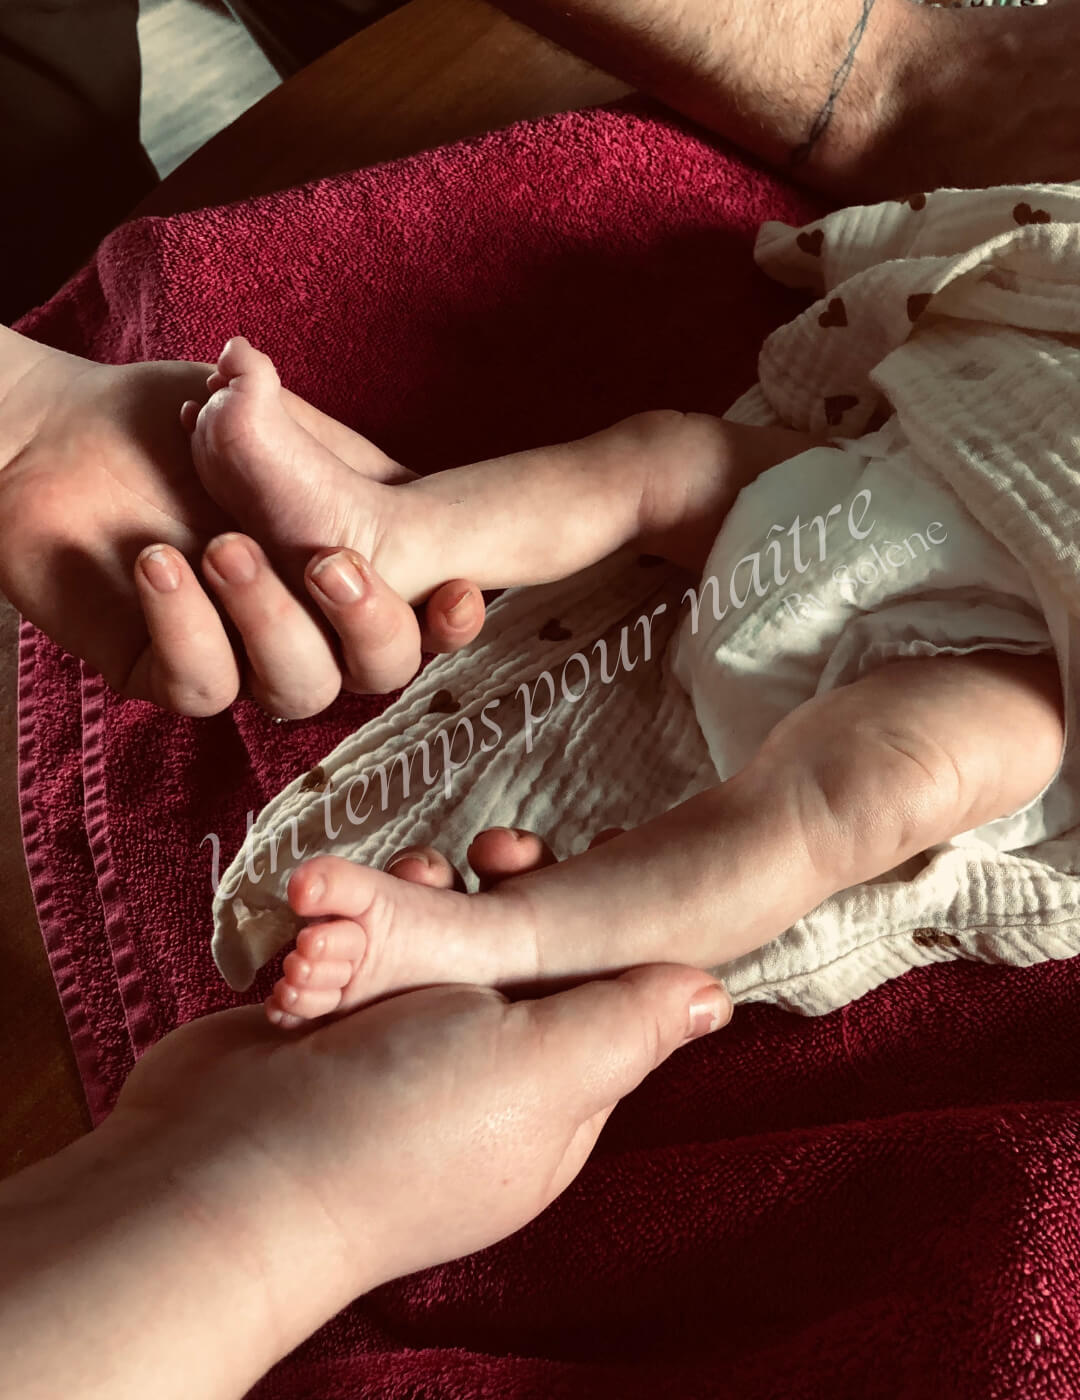 Optez pour le massage bébé ayurvédique pour accompagner la croissance harmonieuse de votre petit trésor et soulager ses maux du quotidien dans les environs de Douai, Valenciennes, Orchies, Somain, Henin-Beaumont et Arras